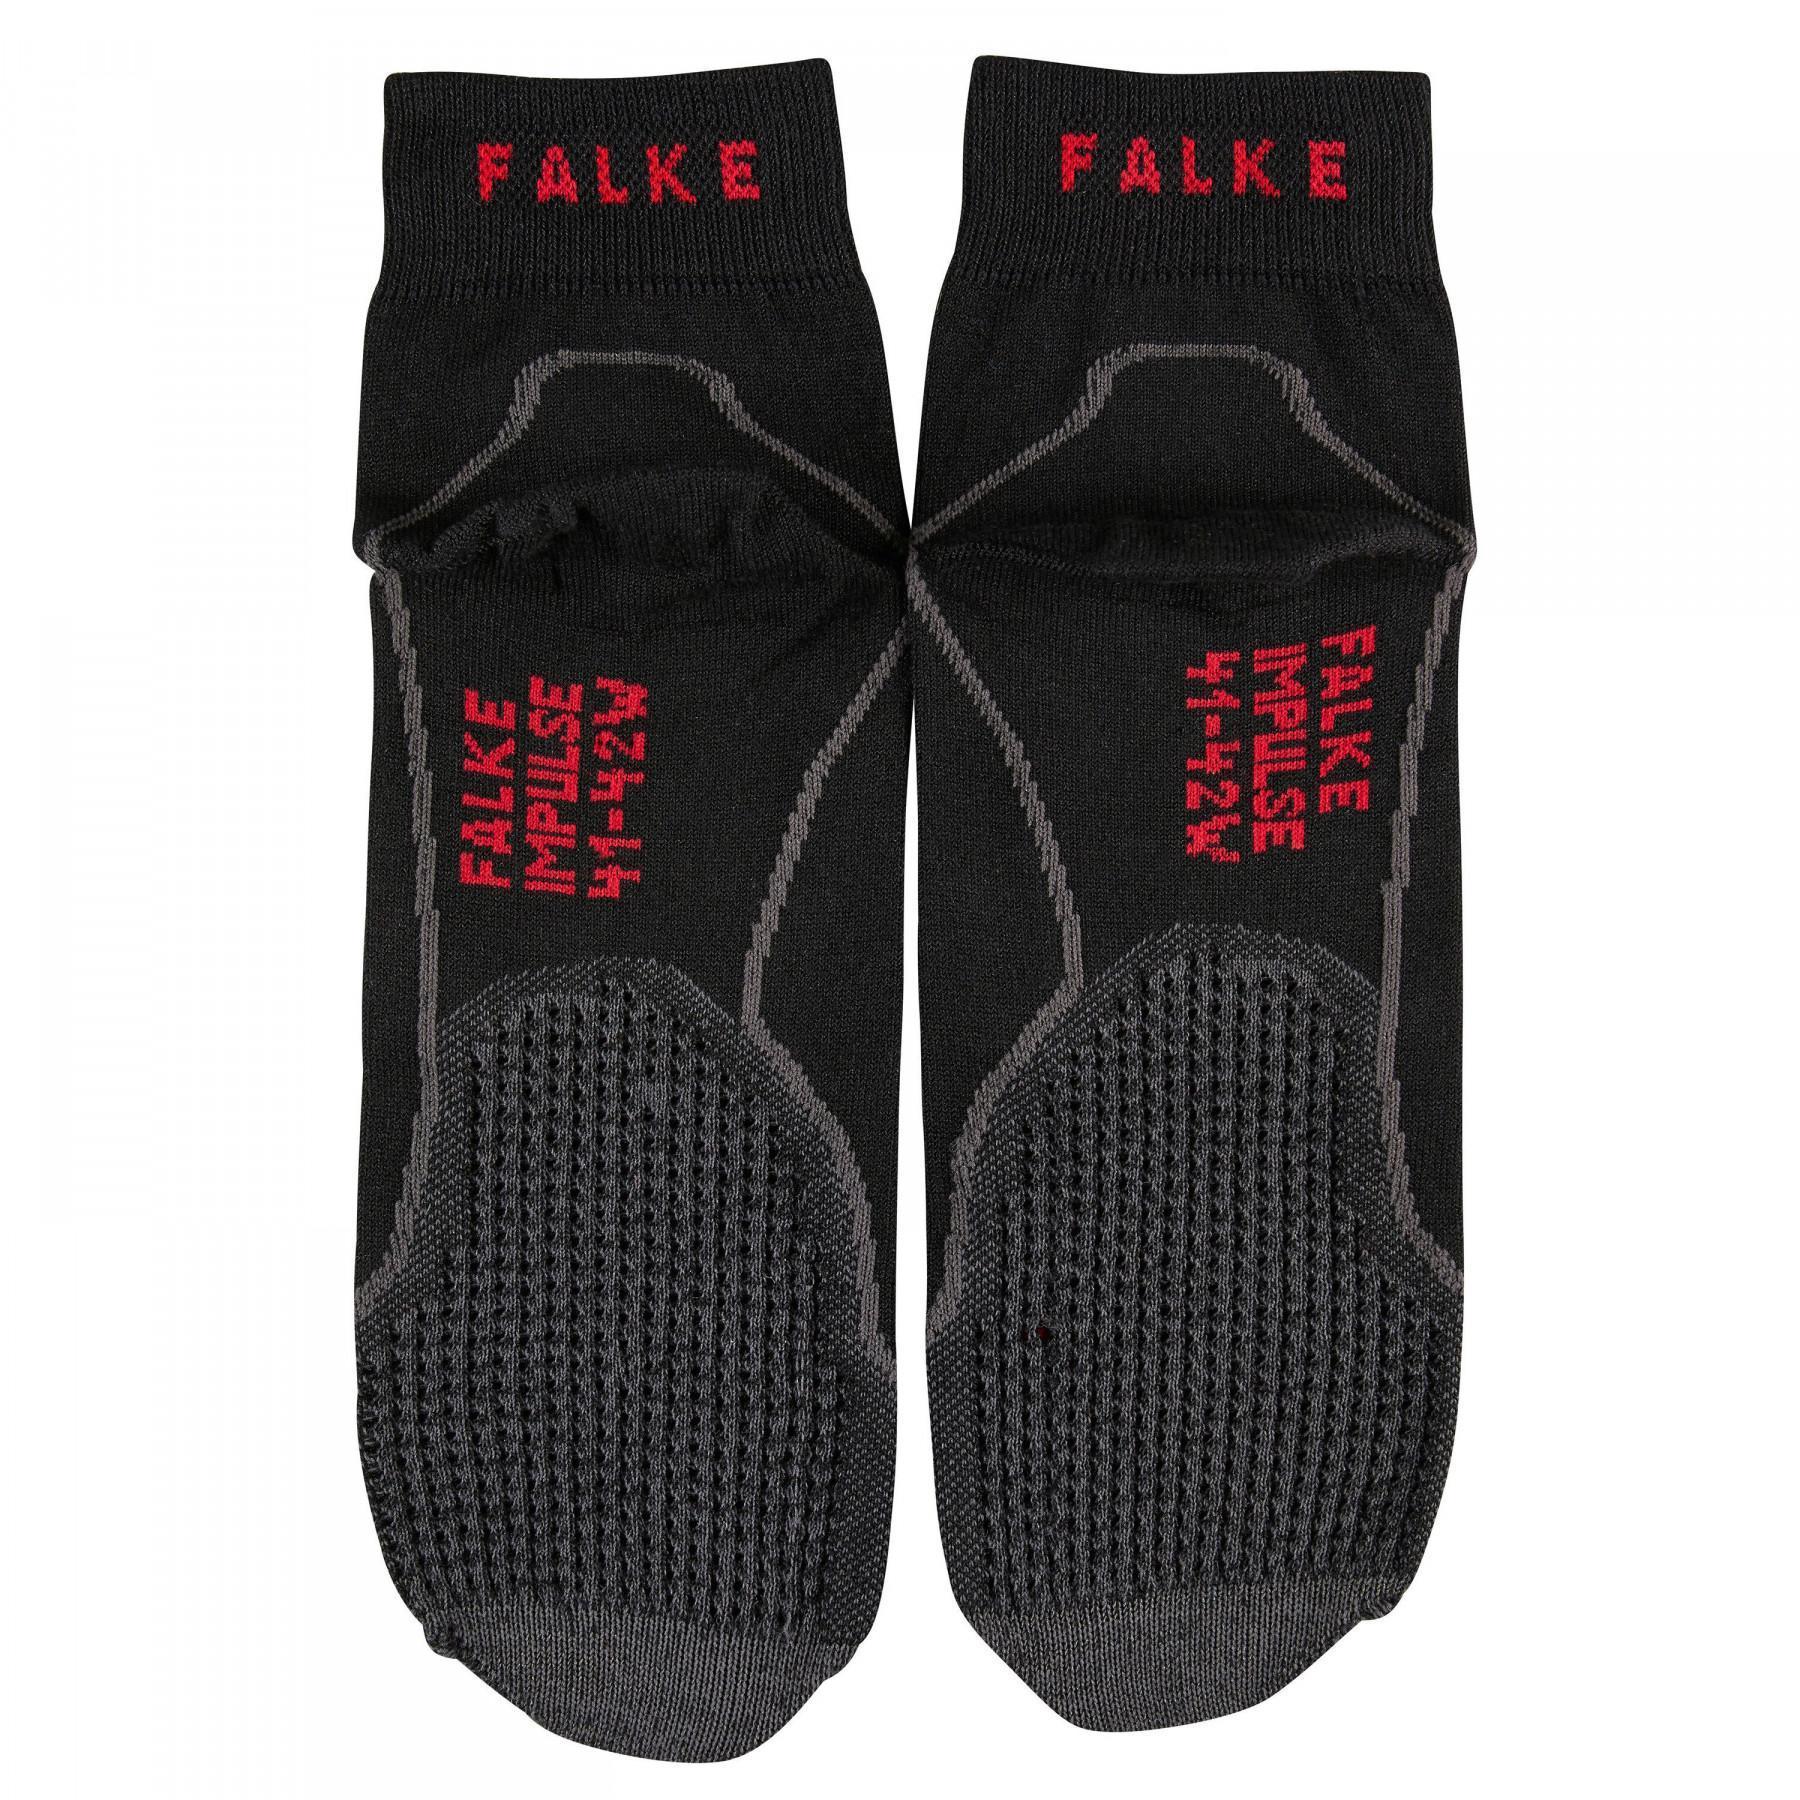 Women's socks Falke Impulse Air